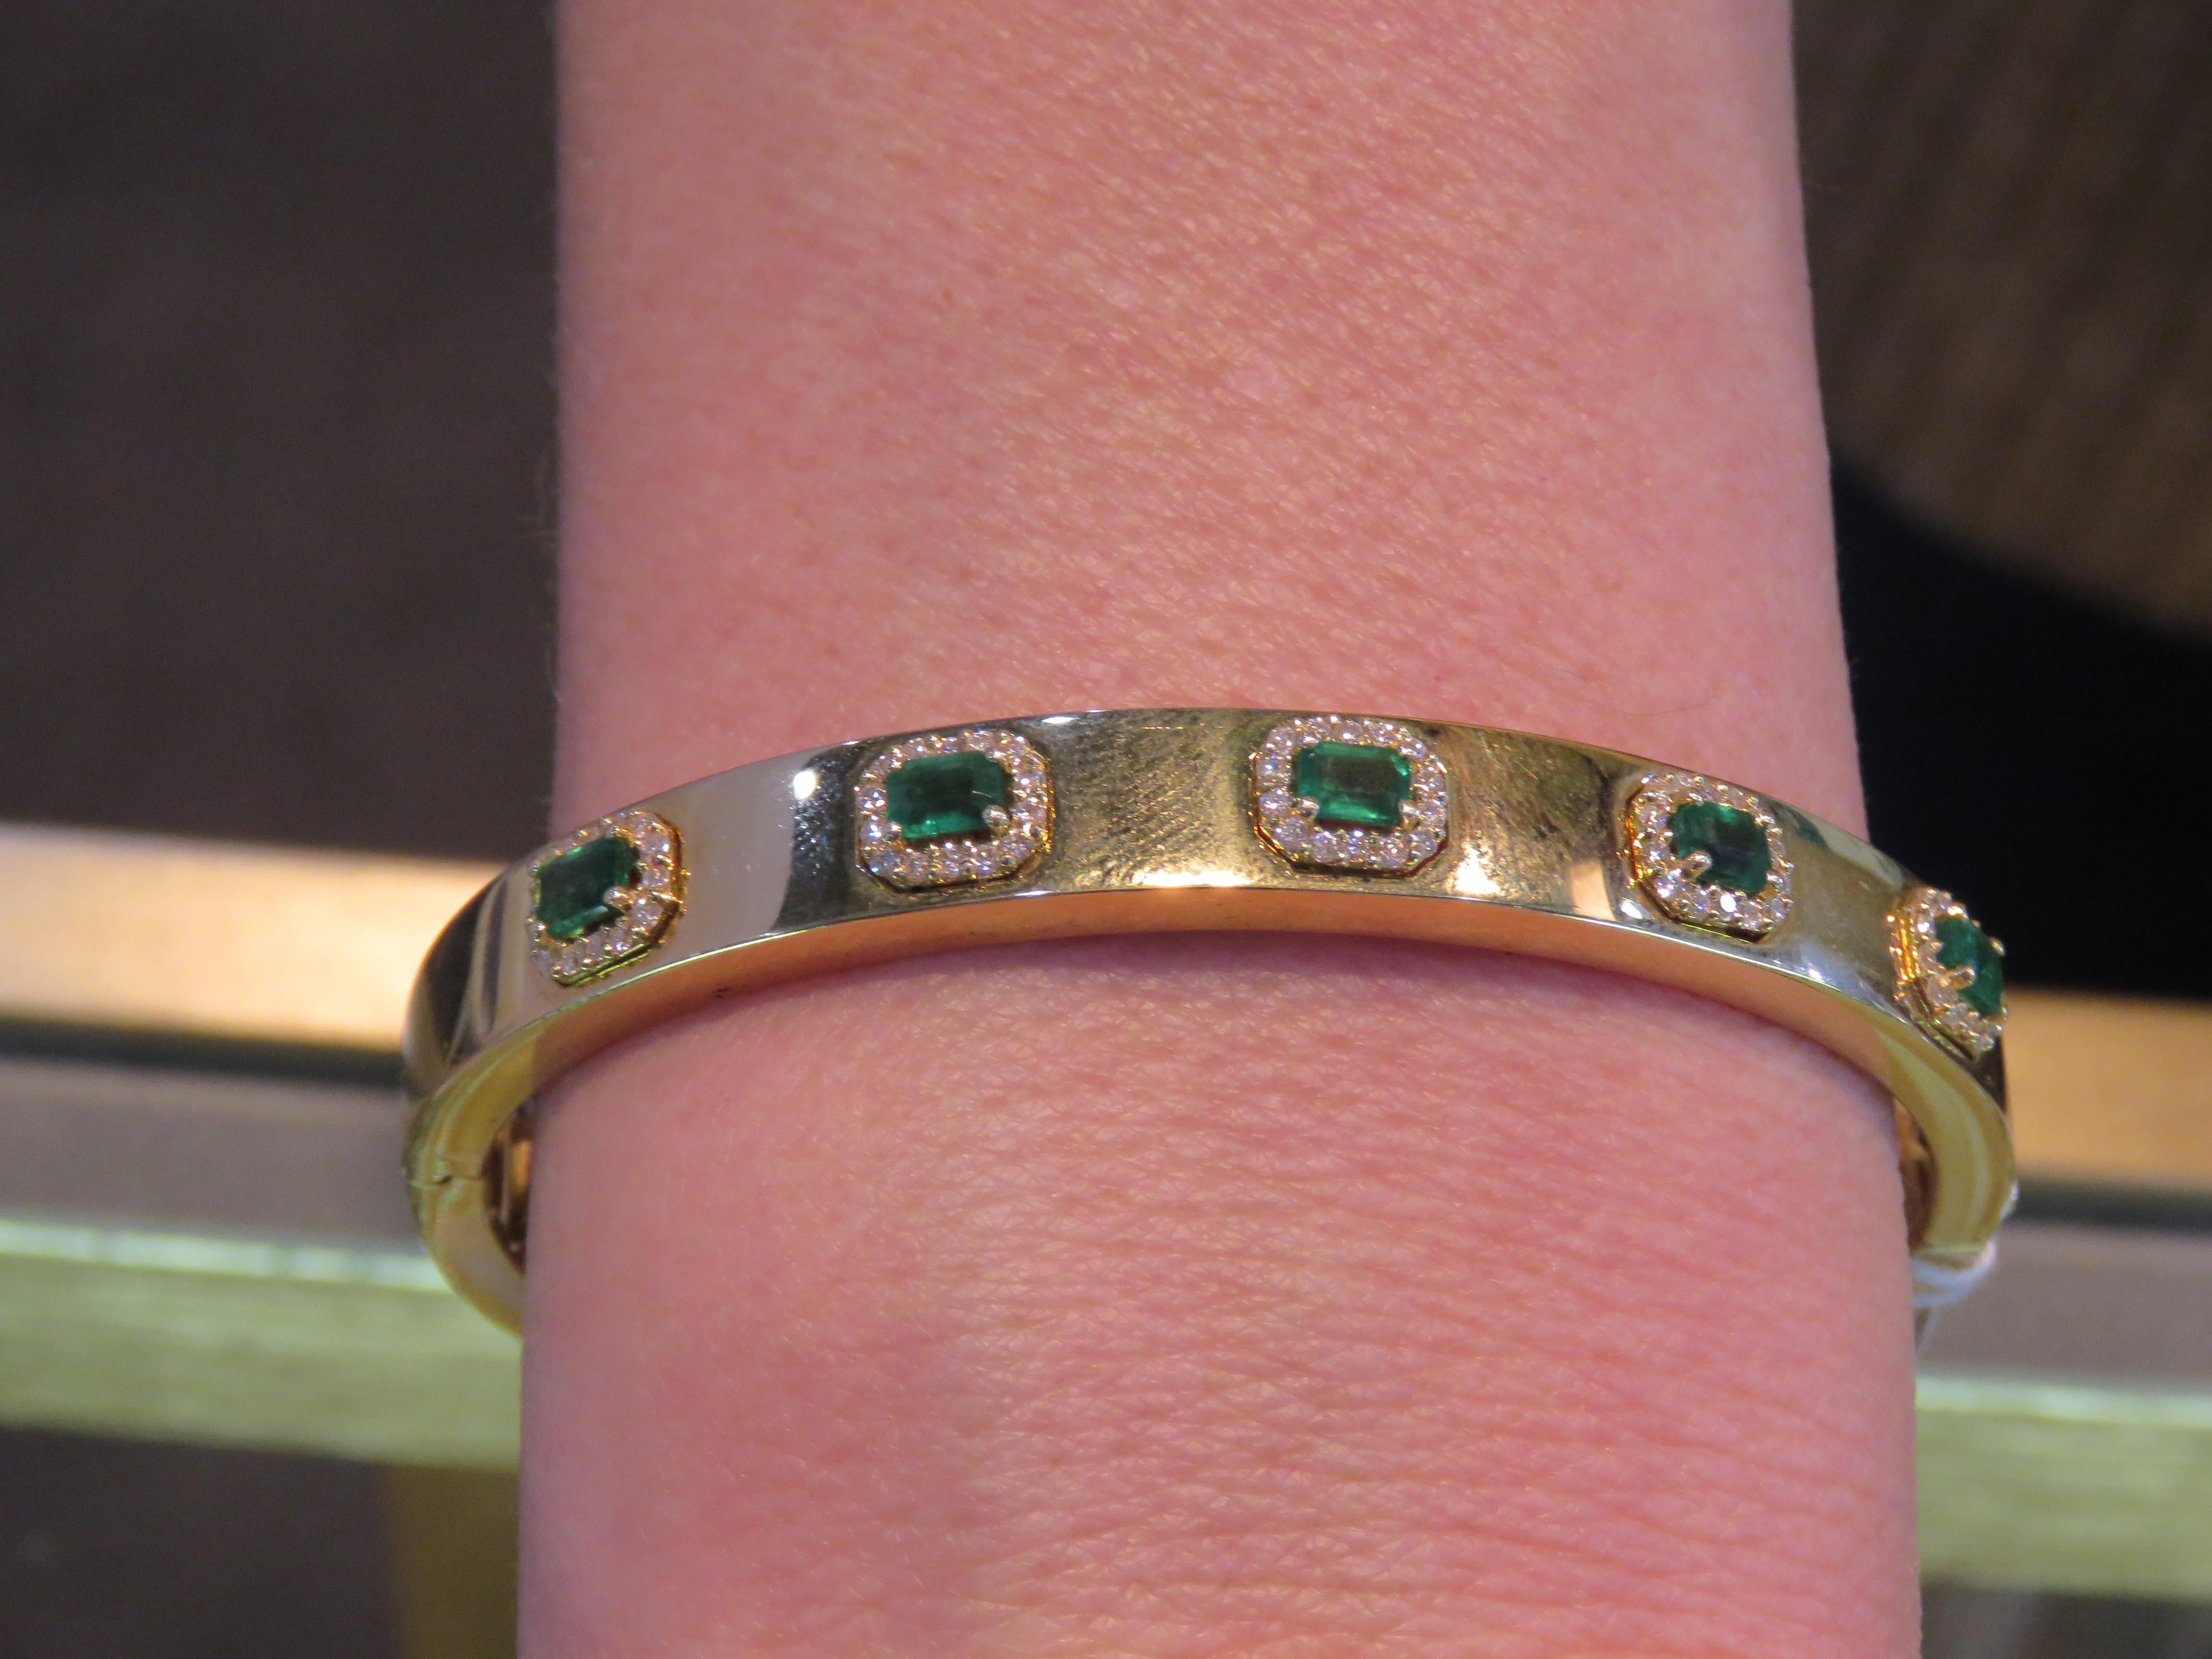 Das folgende Element, das wir anbieten, ist eine seltene Magnificent Radiant 18KT Gold Large Rare Gorgeous Fancy Smaragd und Diamant-Armreif Armband. Das Armband besteht aus wunderschönen glitzernden Smaragden, umgeben von herrlichen Diamanten!!!